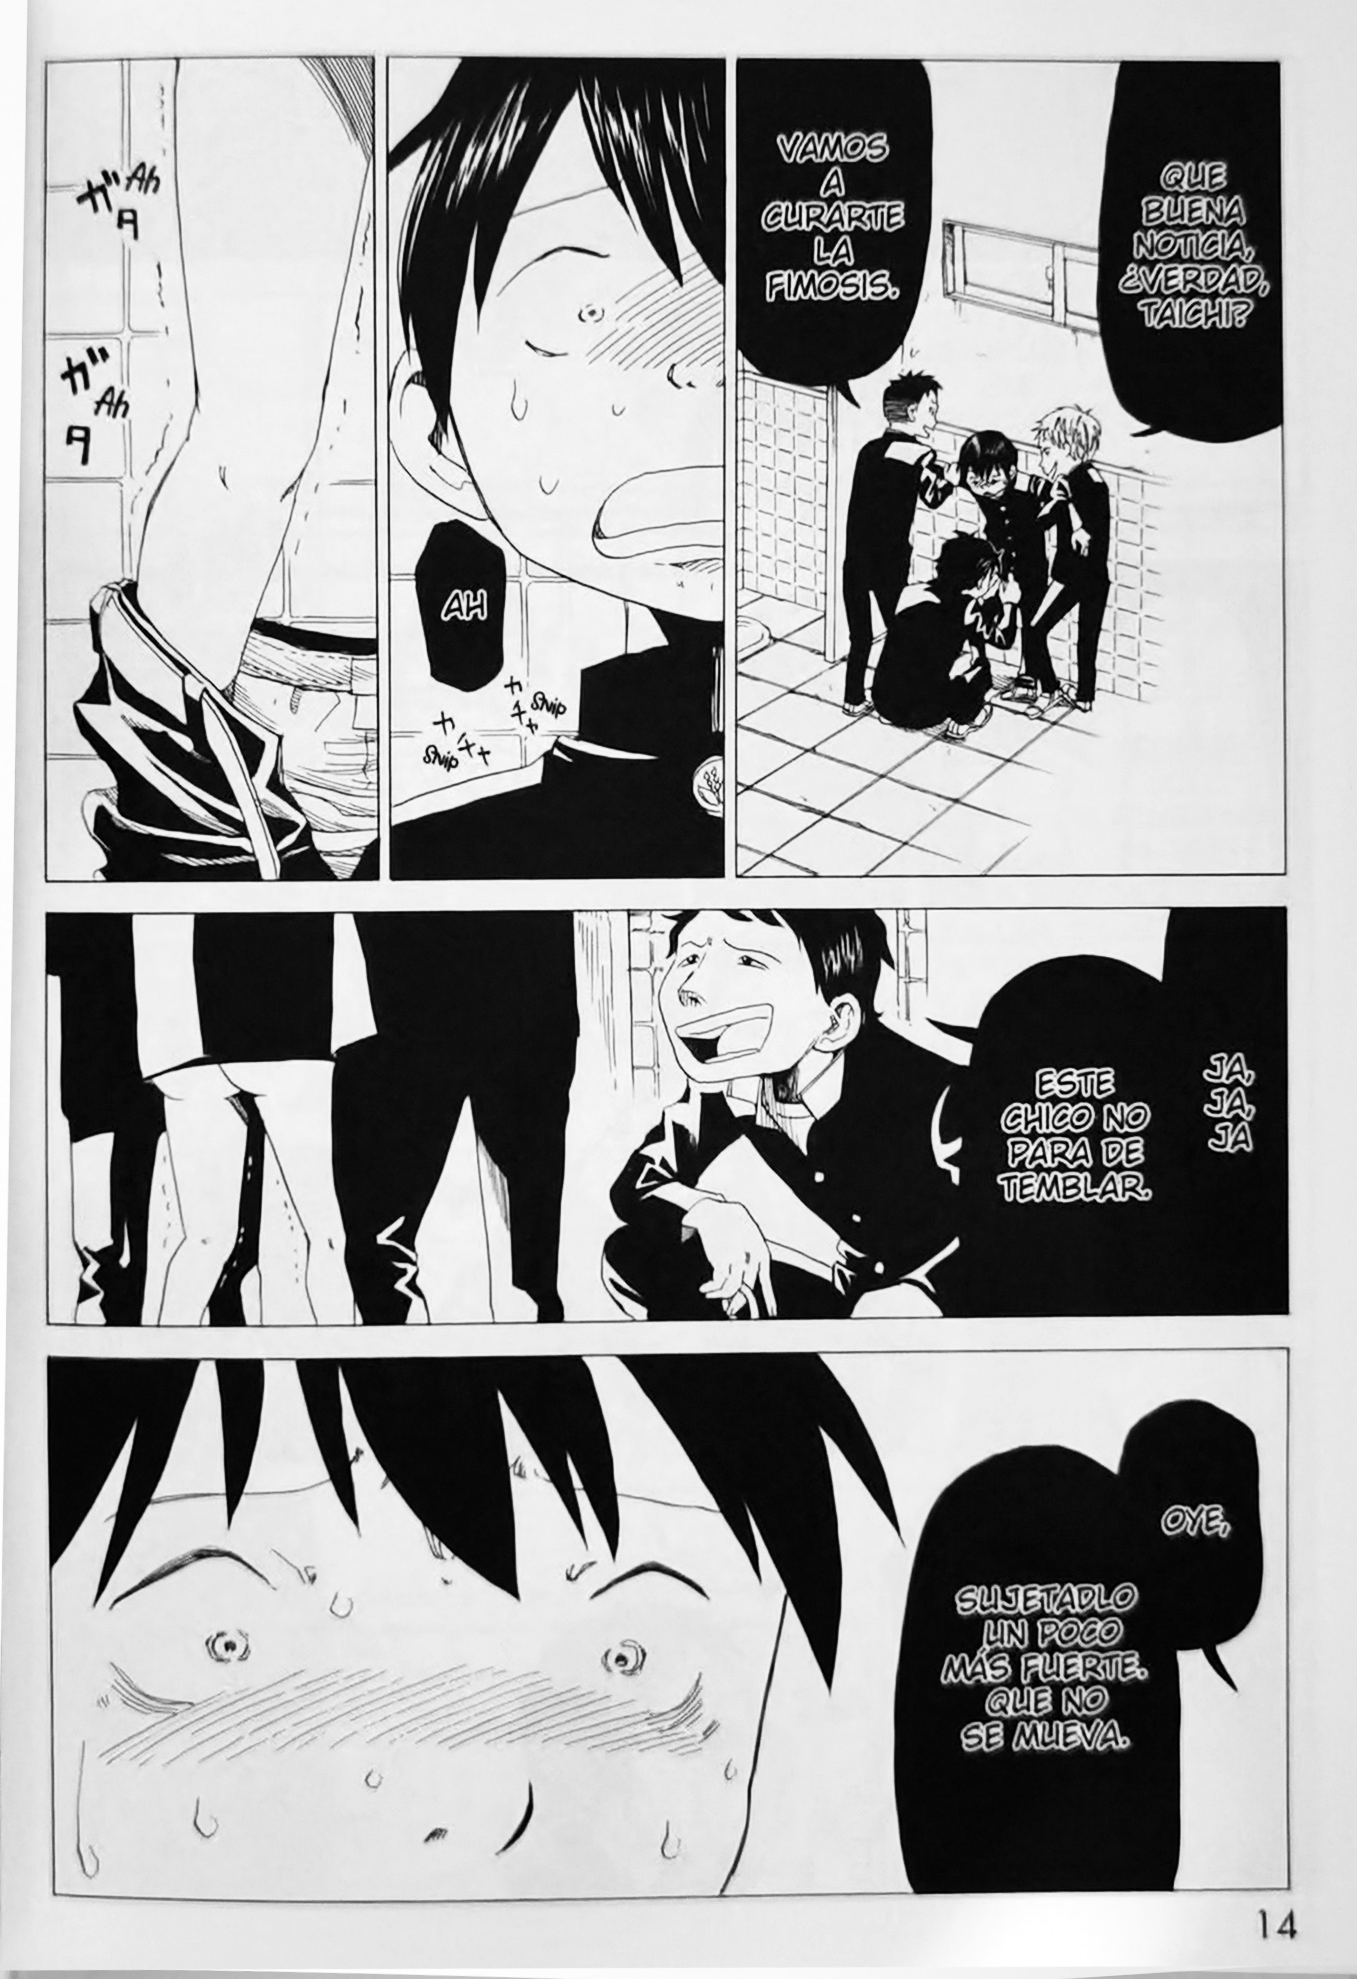 Manga escena de bullying de El ministerio de la muerte